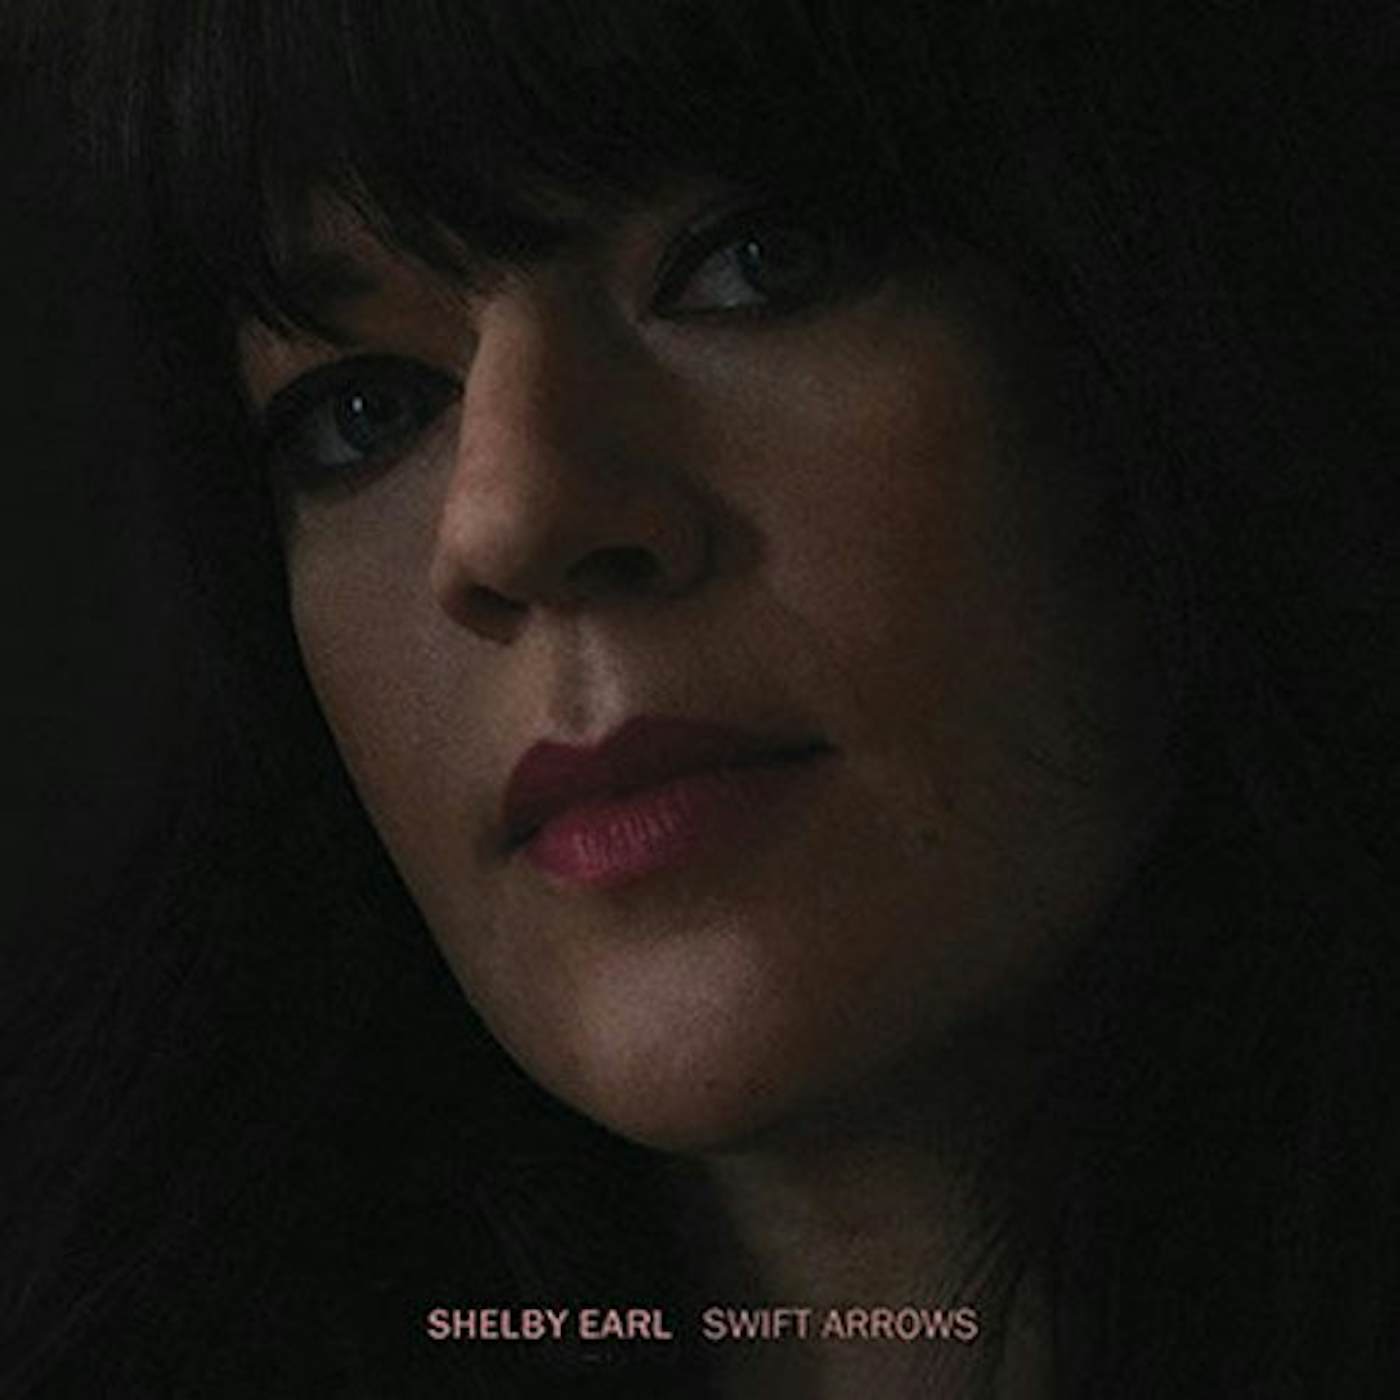 Shelby Earl Swift Arrows Vinyl Record